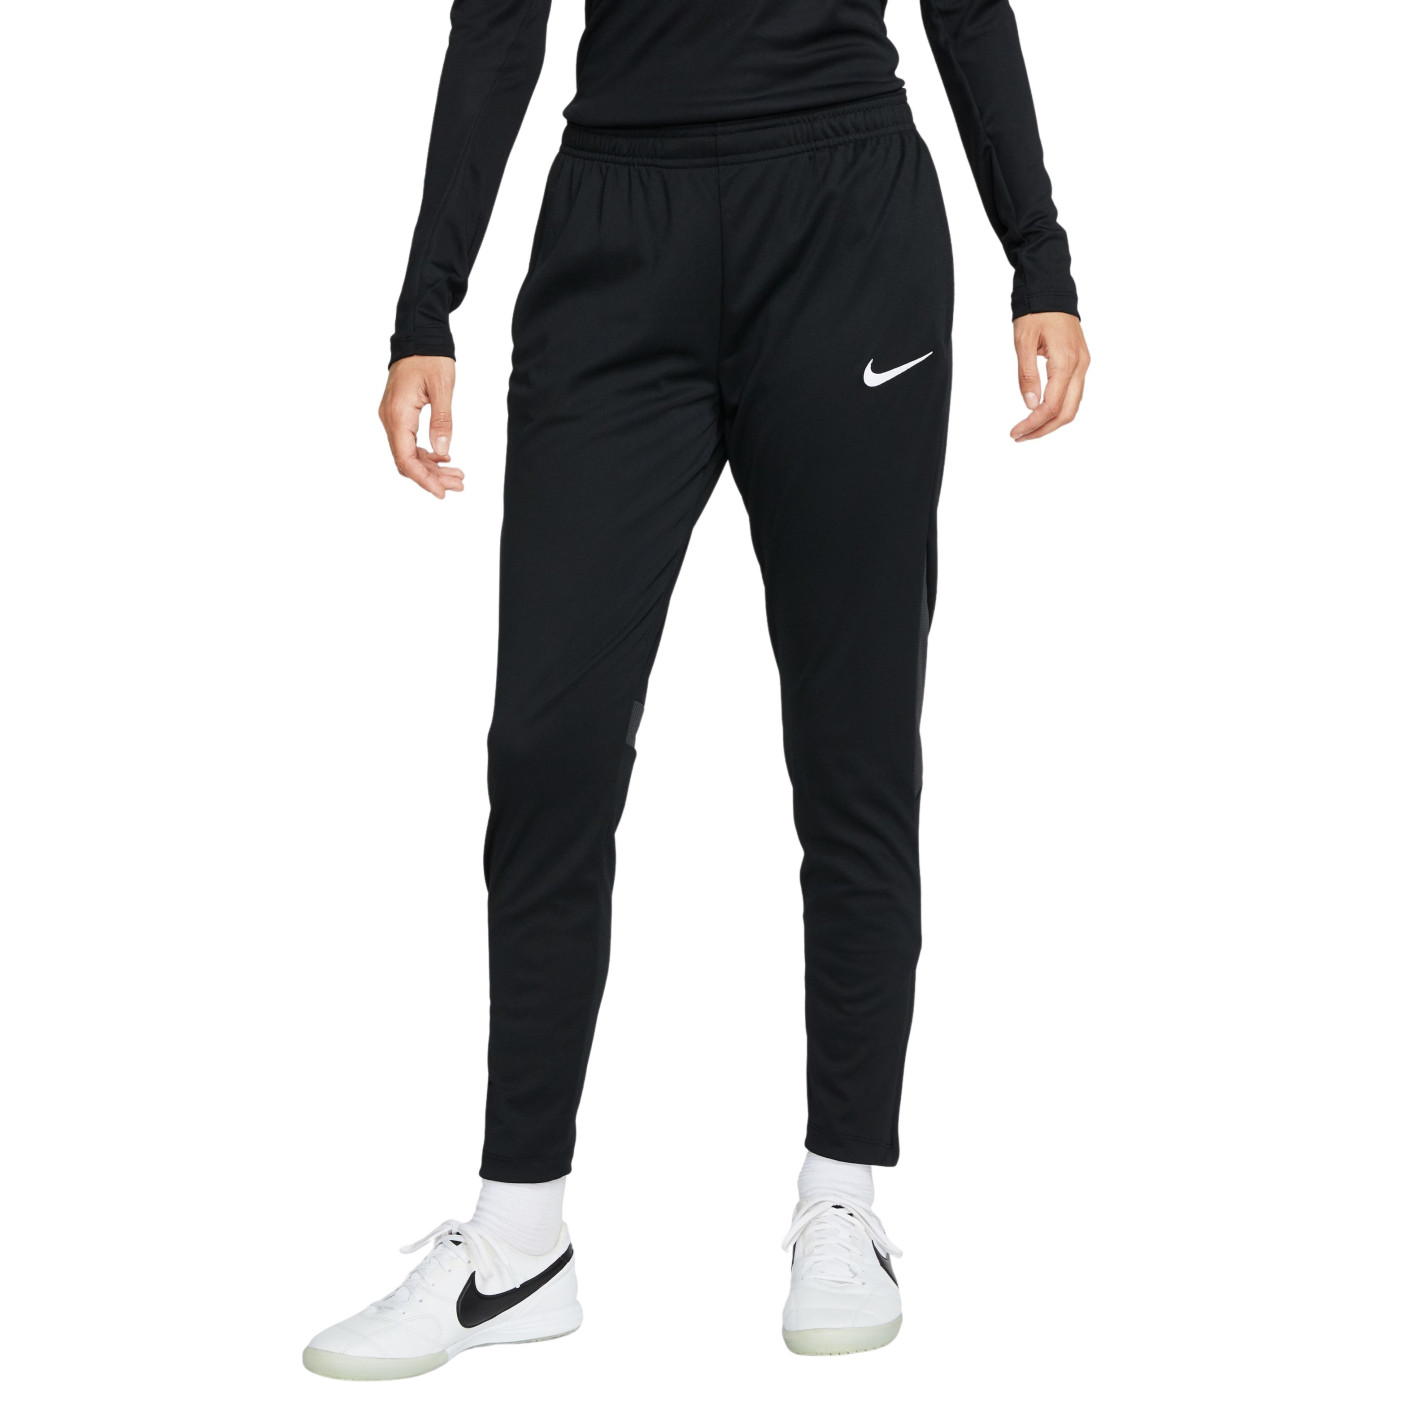 Nike Academy Pro Pantalon d'Entraînement Femmes Noir Gris